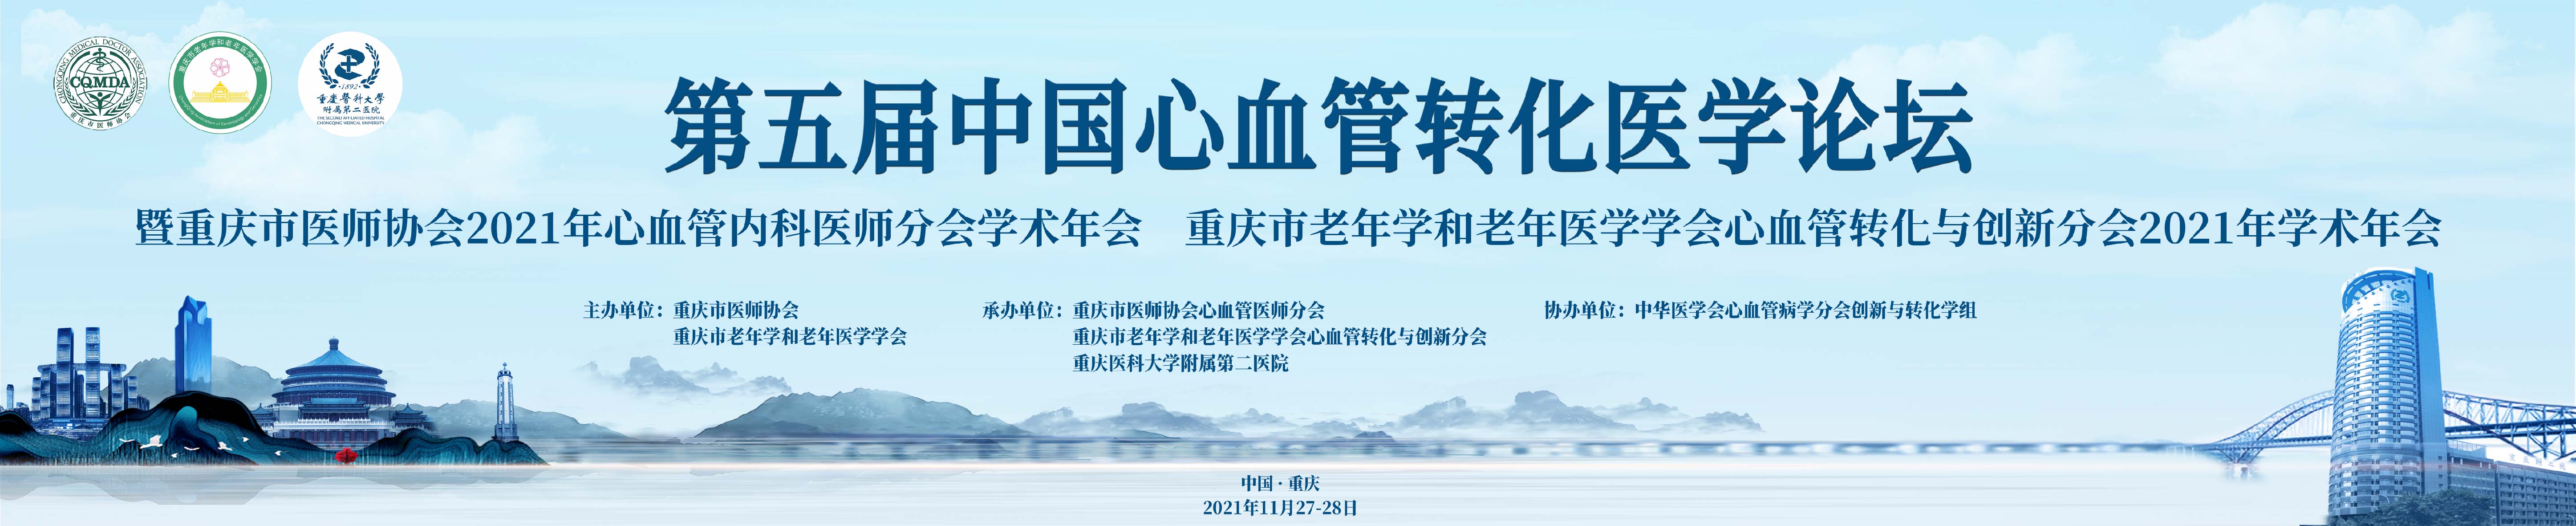 重庆市医师协会心血管内科医师分会2021年学术年会